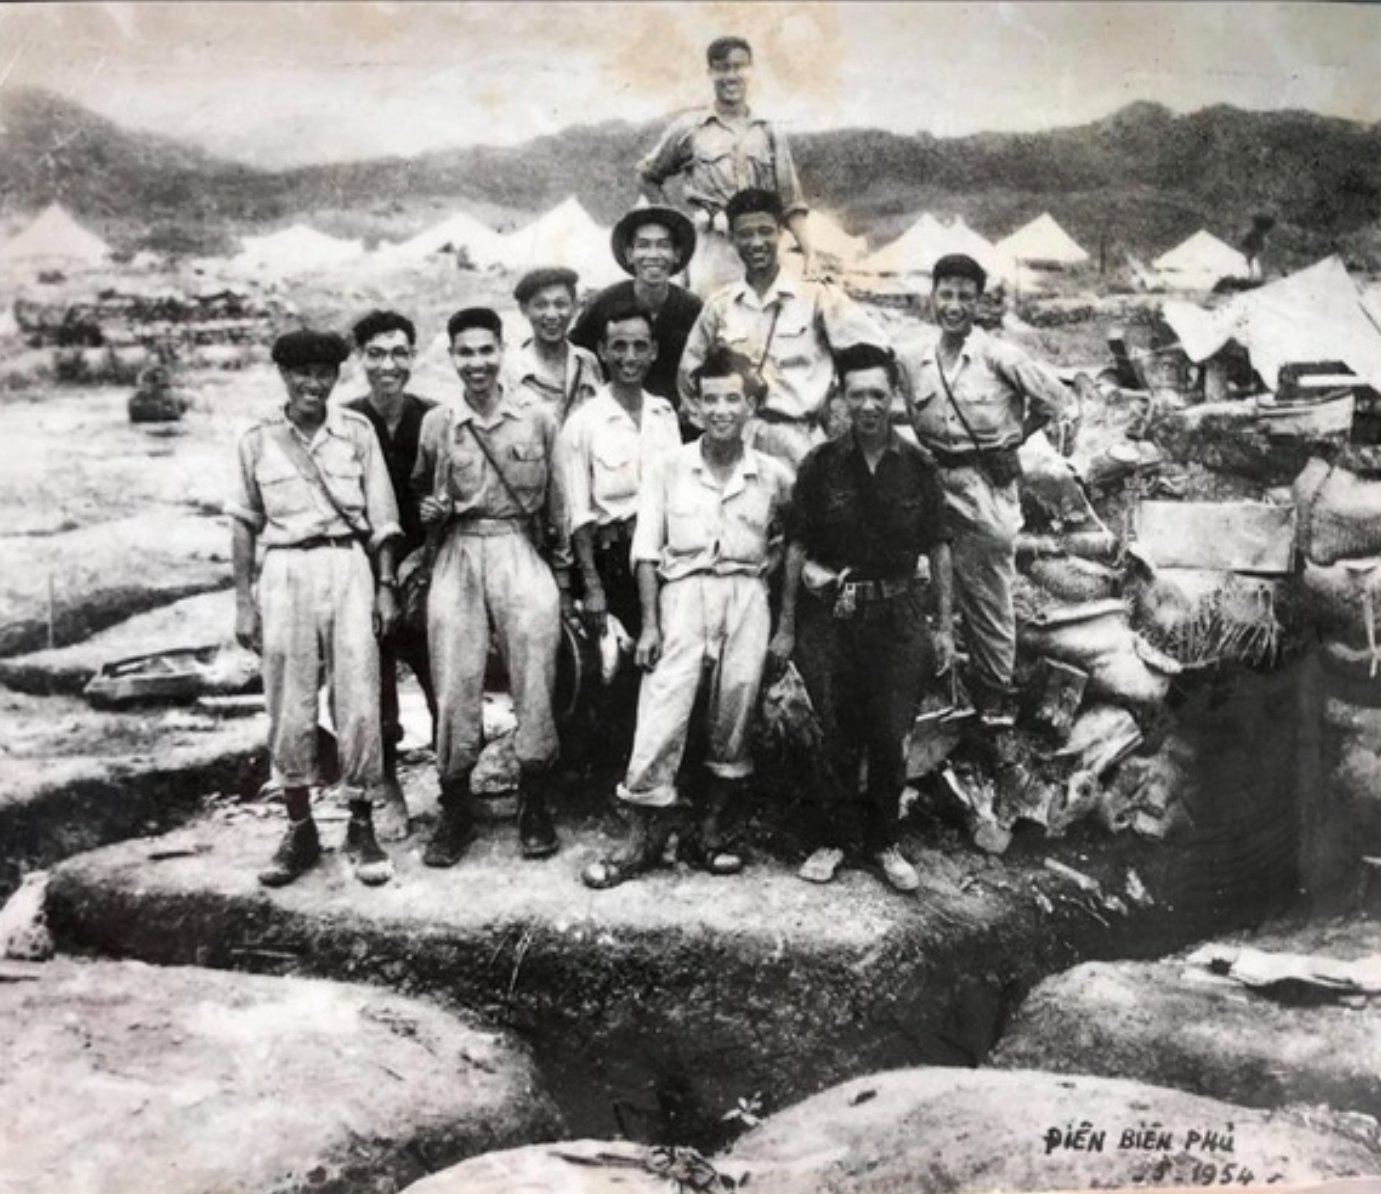 Đoàn làm phim tài liệu và nhiếp ảnh tham gia chiến dịch Điện Biên Phủ, năm 1954 - Ảnh: Cục điện ảnh